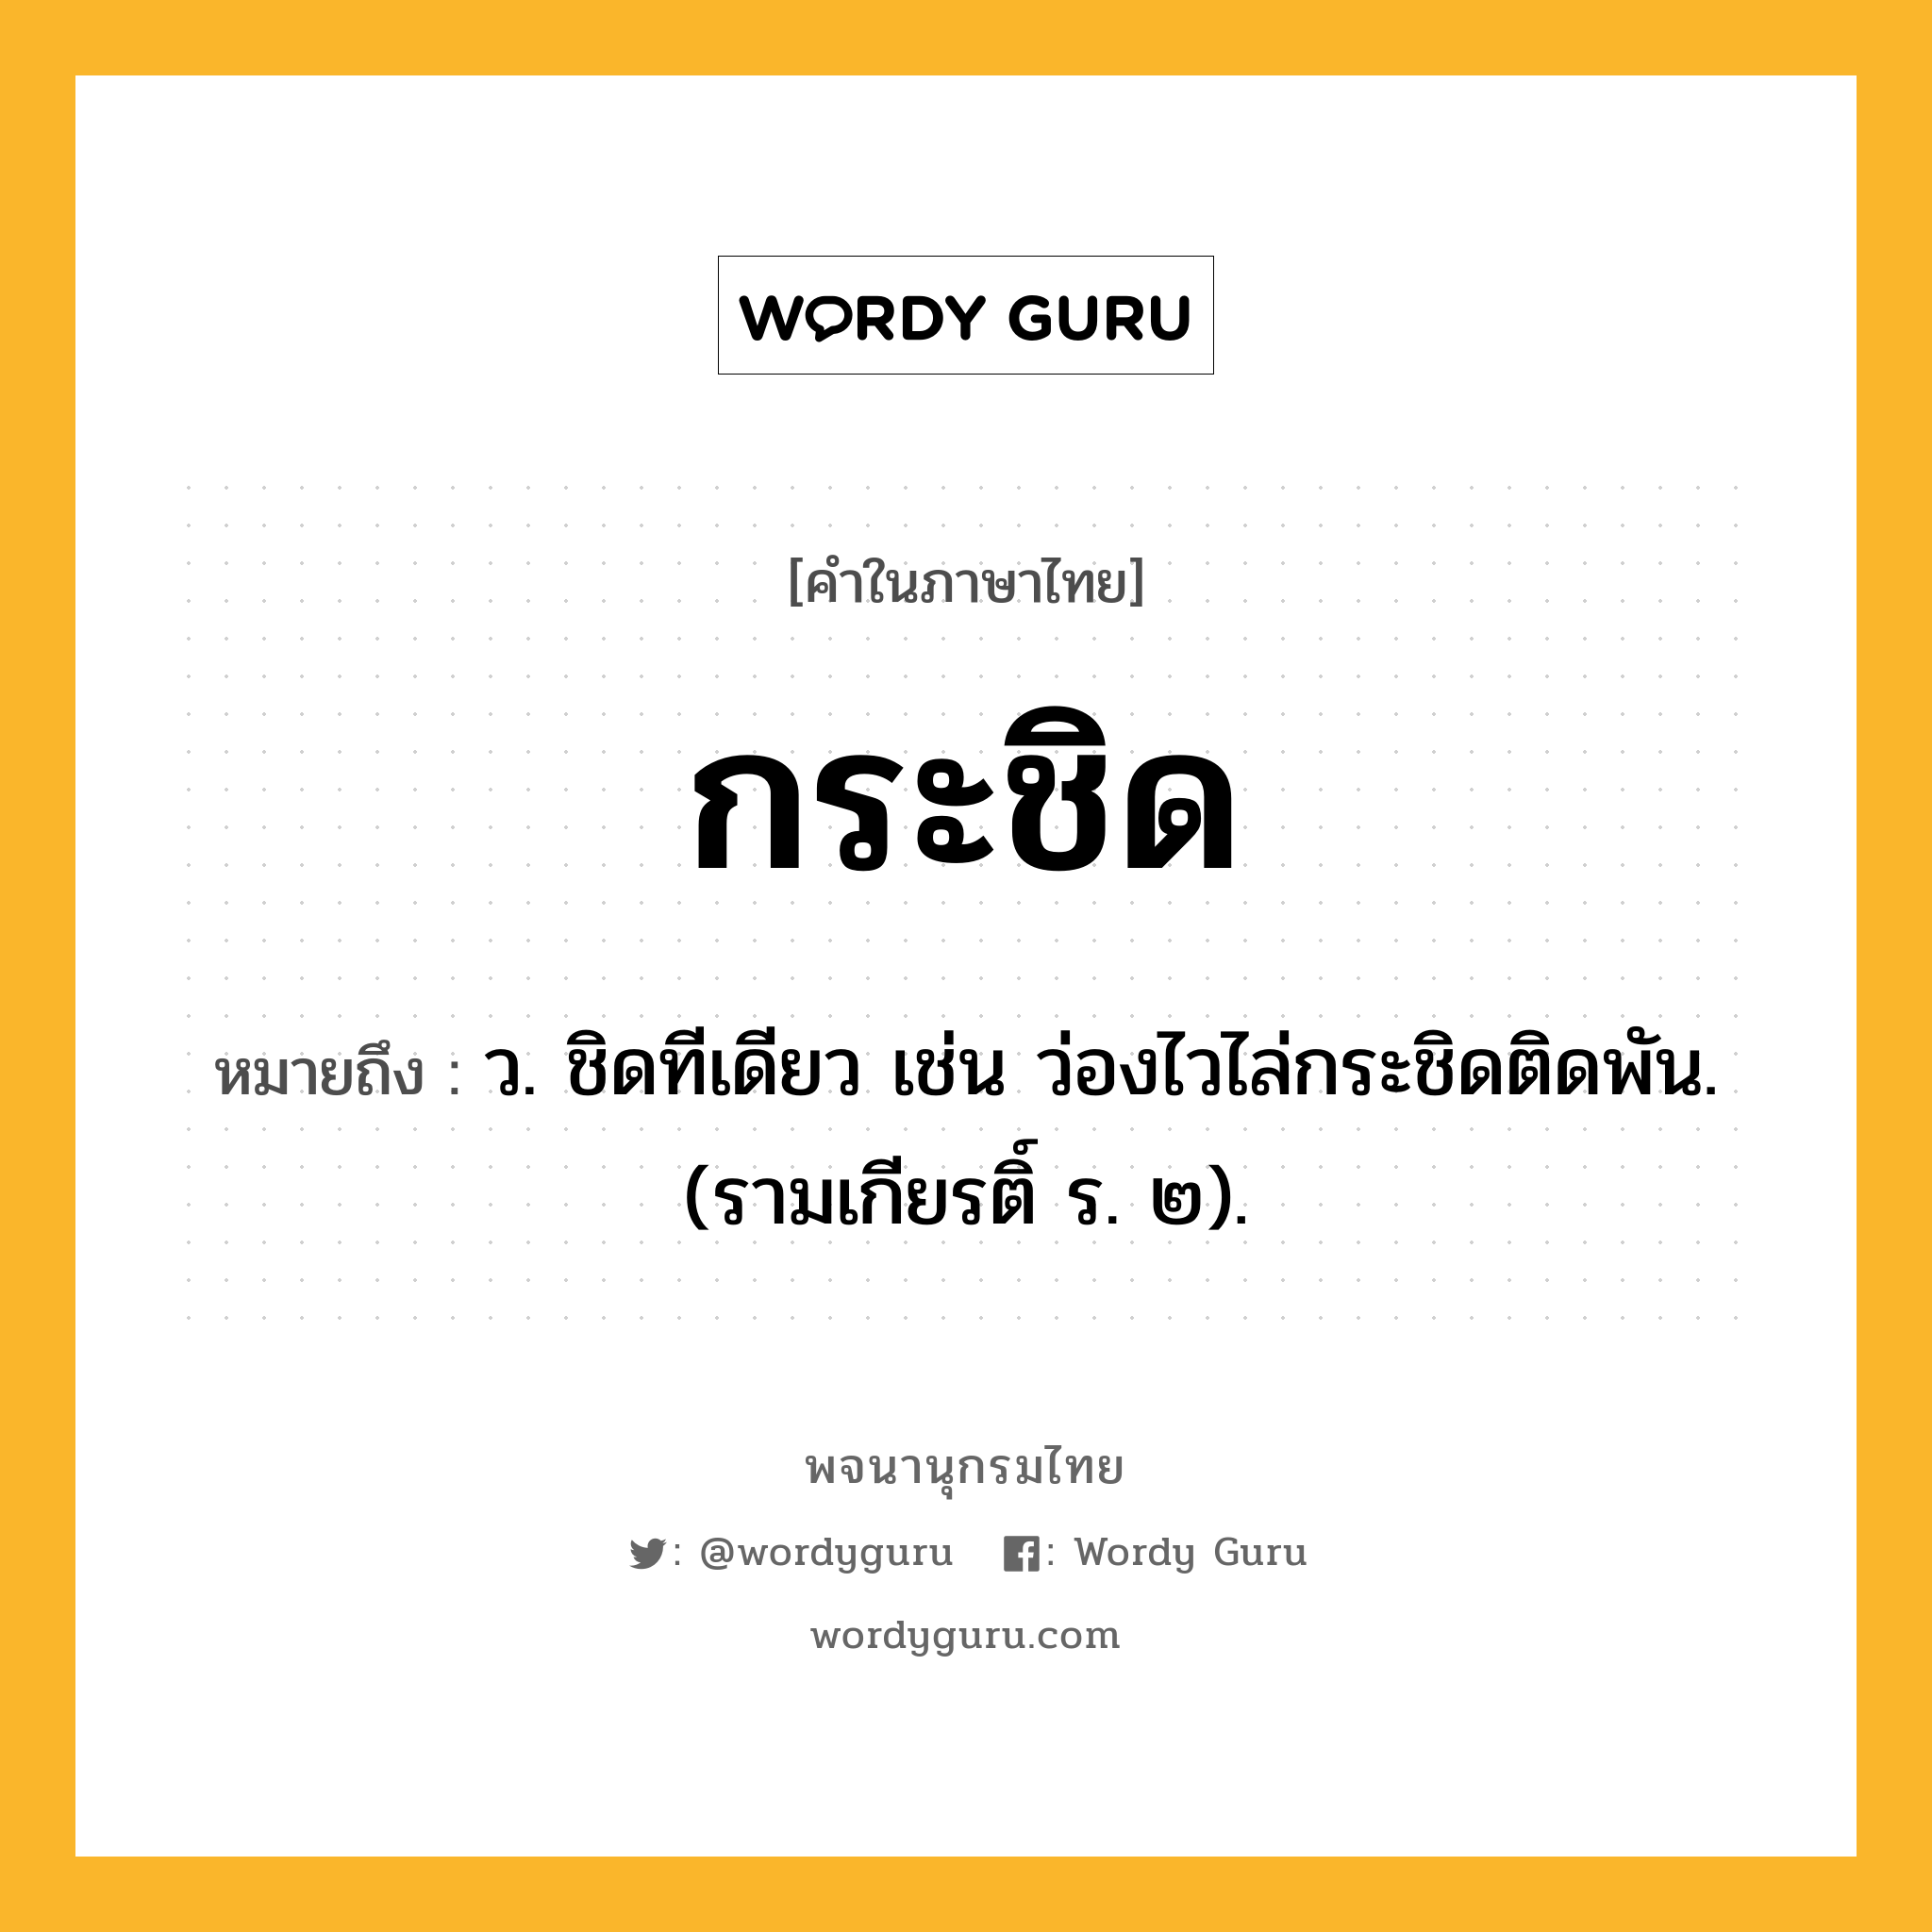 กระชิด ความหมาย หมายถึงอะไร?, คำในภาษาไทย กระชิด หมายถึง ว. ชิดทีเดียว เช่น ว่องไวไล่กระชิดติดพัน. (รามเกียรติ์ ร. ๒).